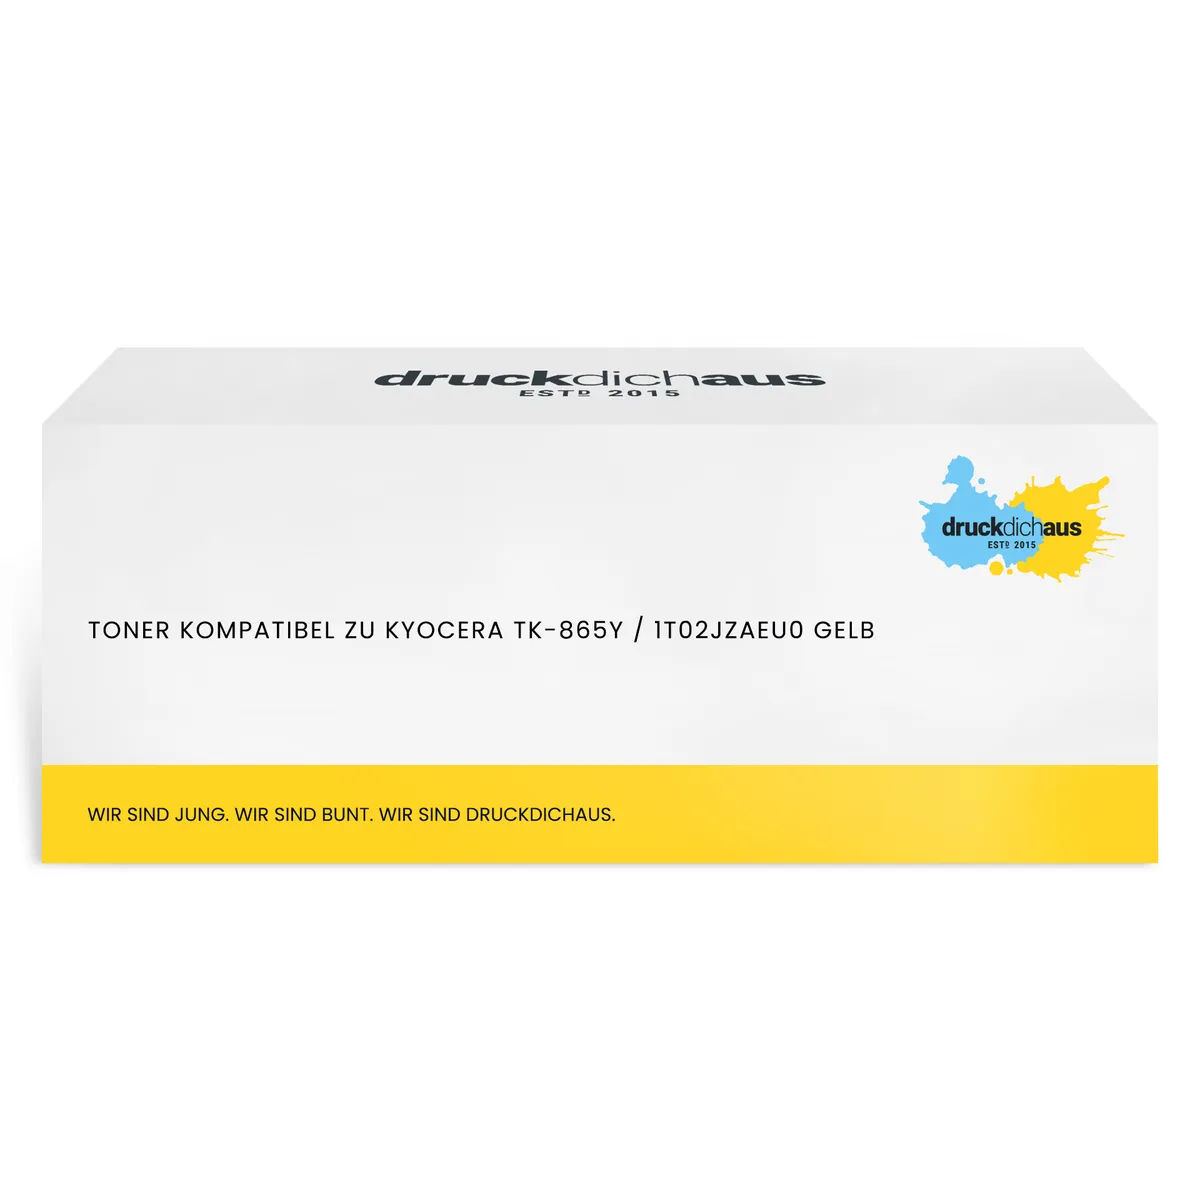 Toner kompatibel zu Kyocera TK-865Y / 1T02JZAEU0 gelb